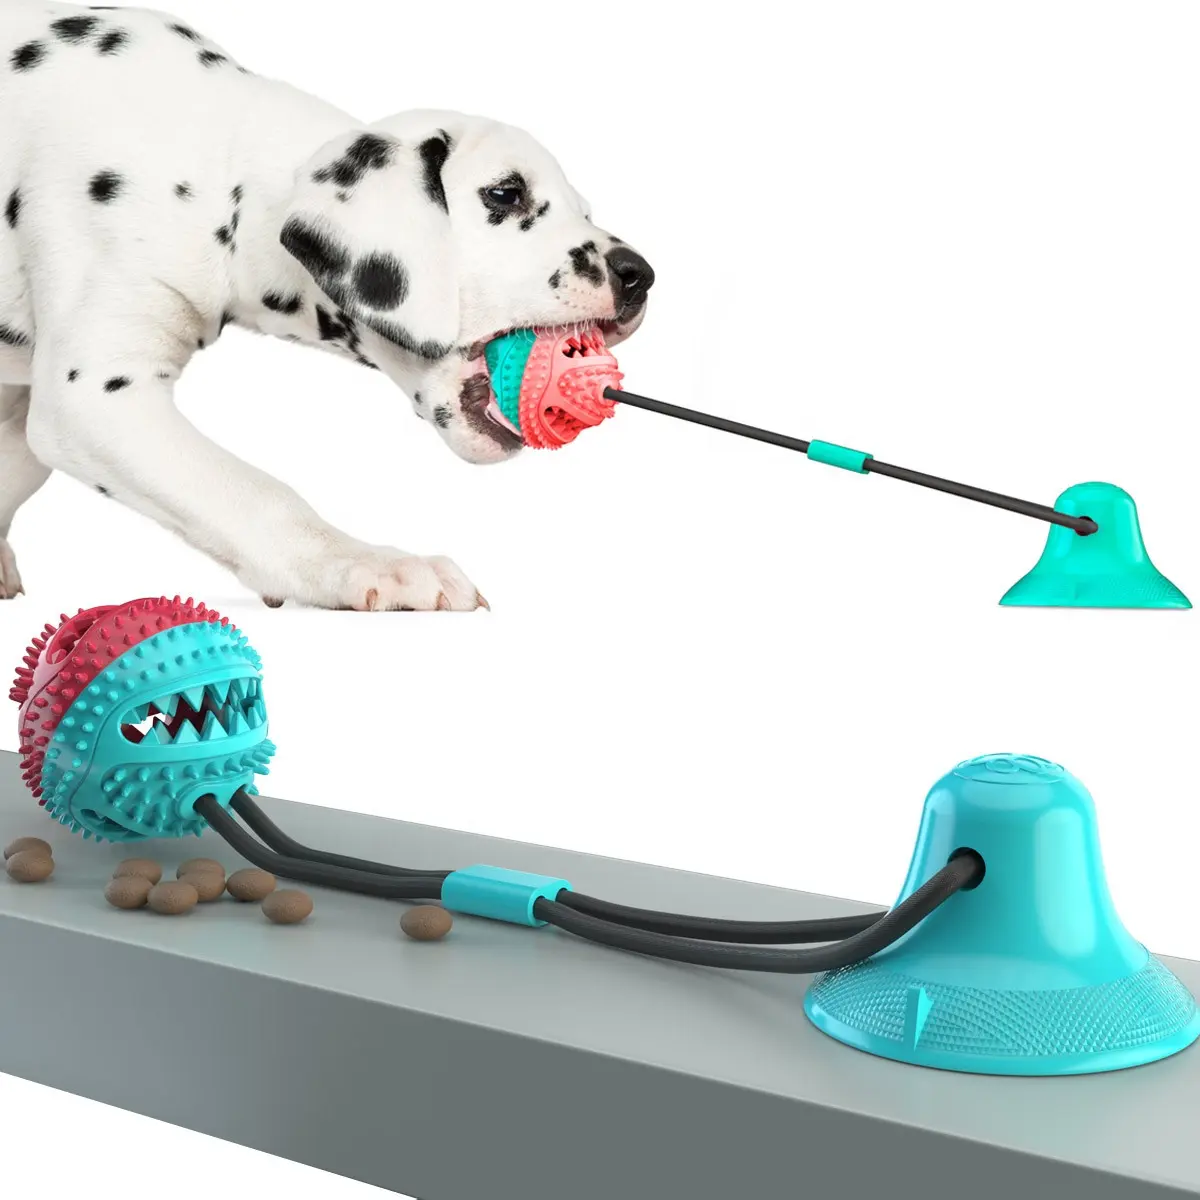 सक्शन कप कुत्ते खिलौना, कुत्ते रस्सी गेंद खींच खिलौना के साथ डबल चूषण कप, बहुक्रिया दाढ़ काटने खिलौना टग युद्ध के लिए आक्रामक चबाना